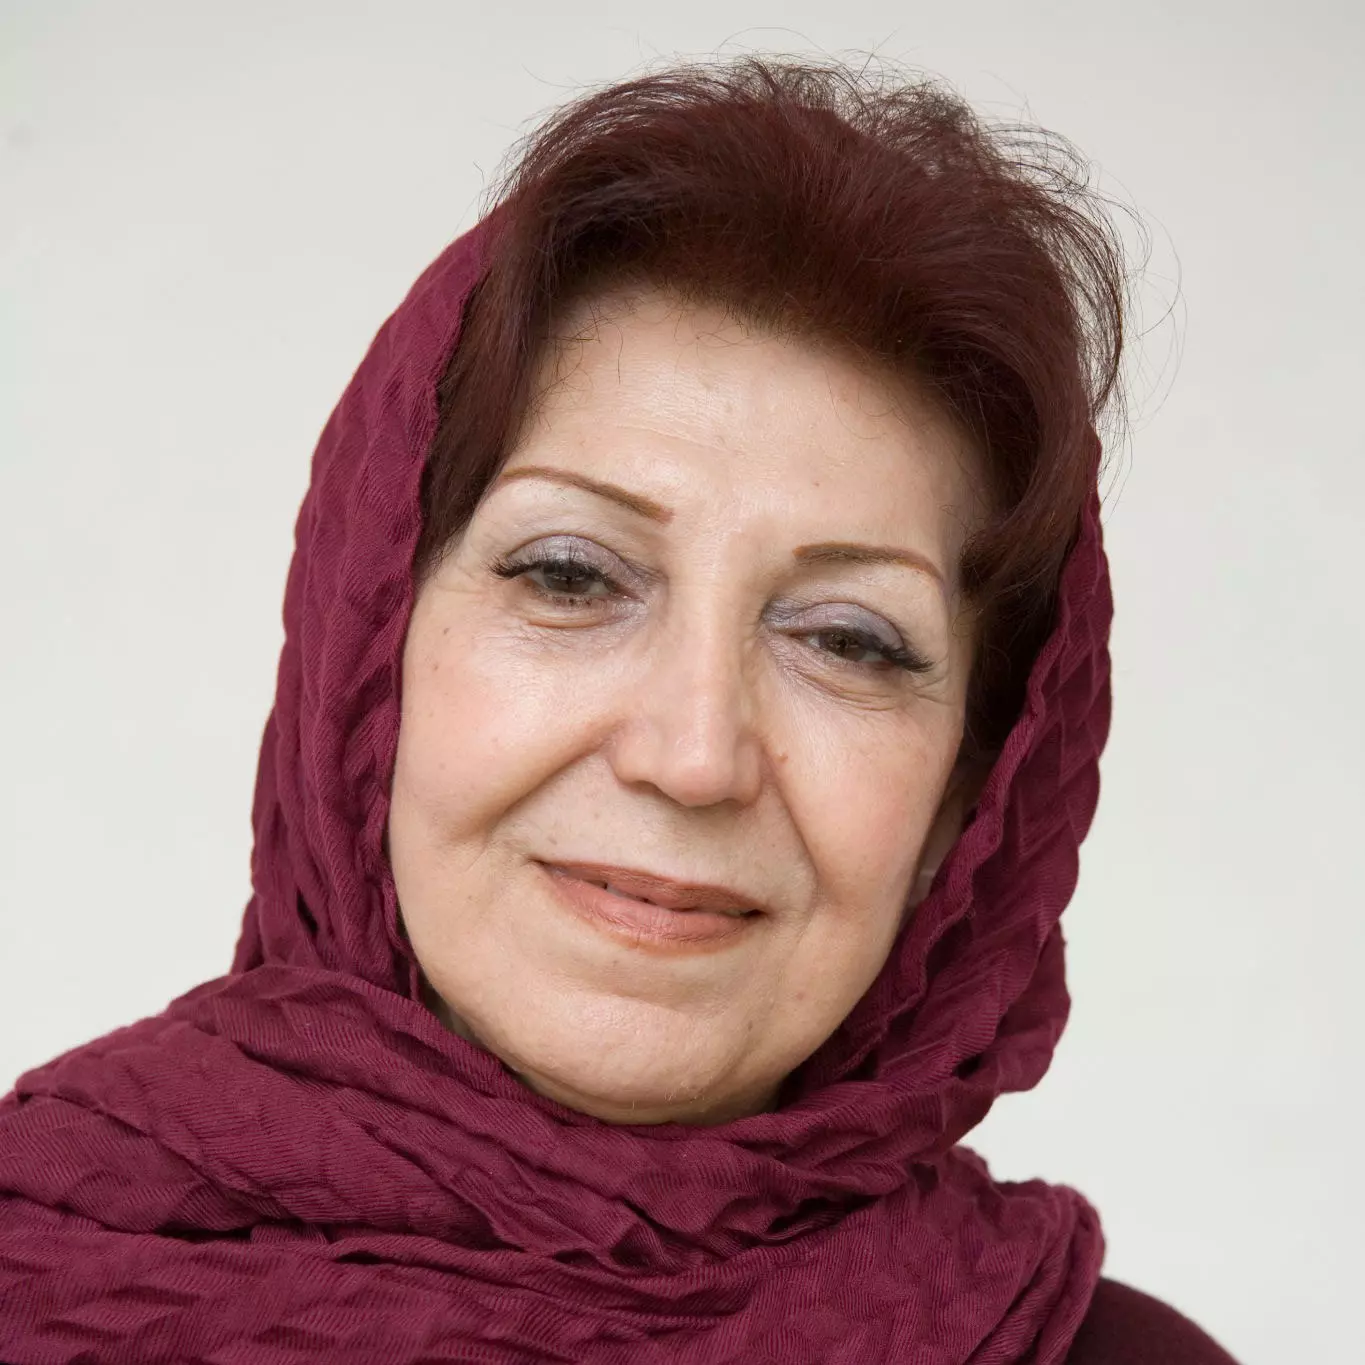 شهلا لاهیجی نویسنده و ناشر ایرانی درگذشت